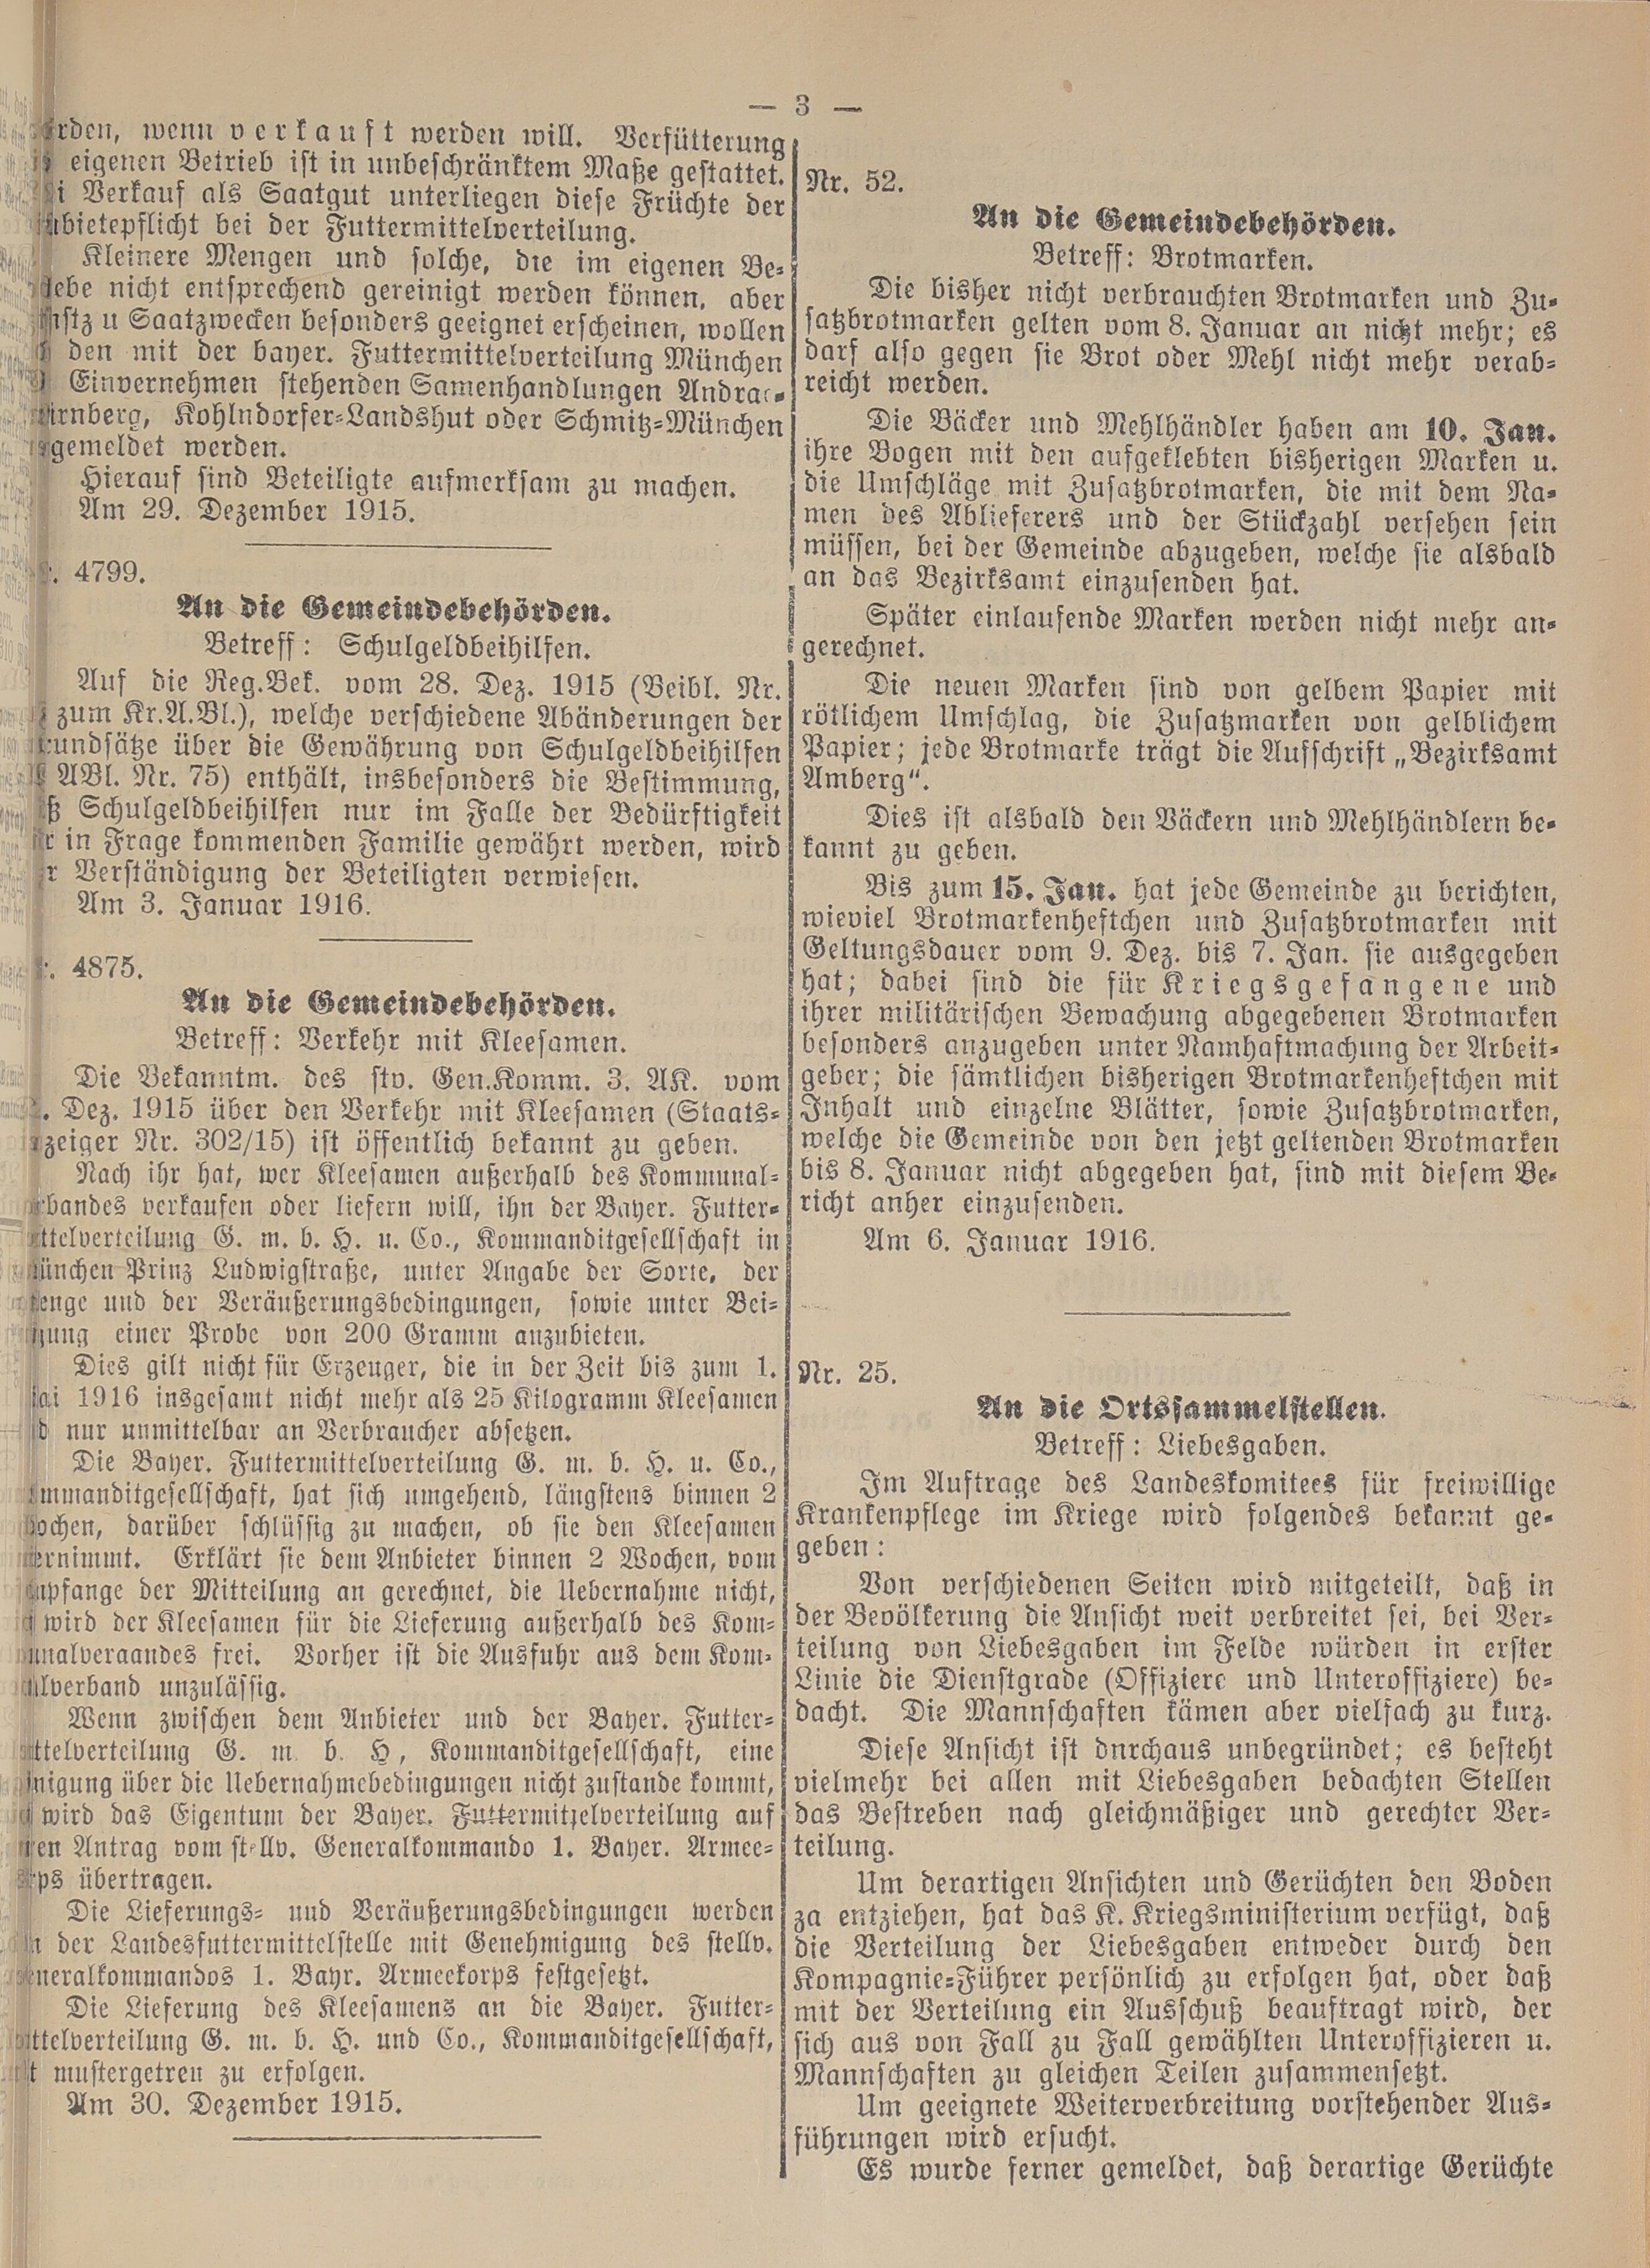 3. amtsblatt-amberg-1916-01-08-n1_5190